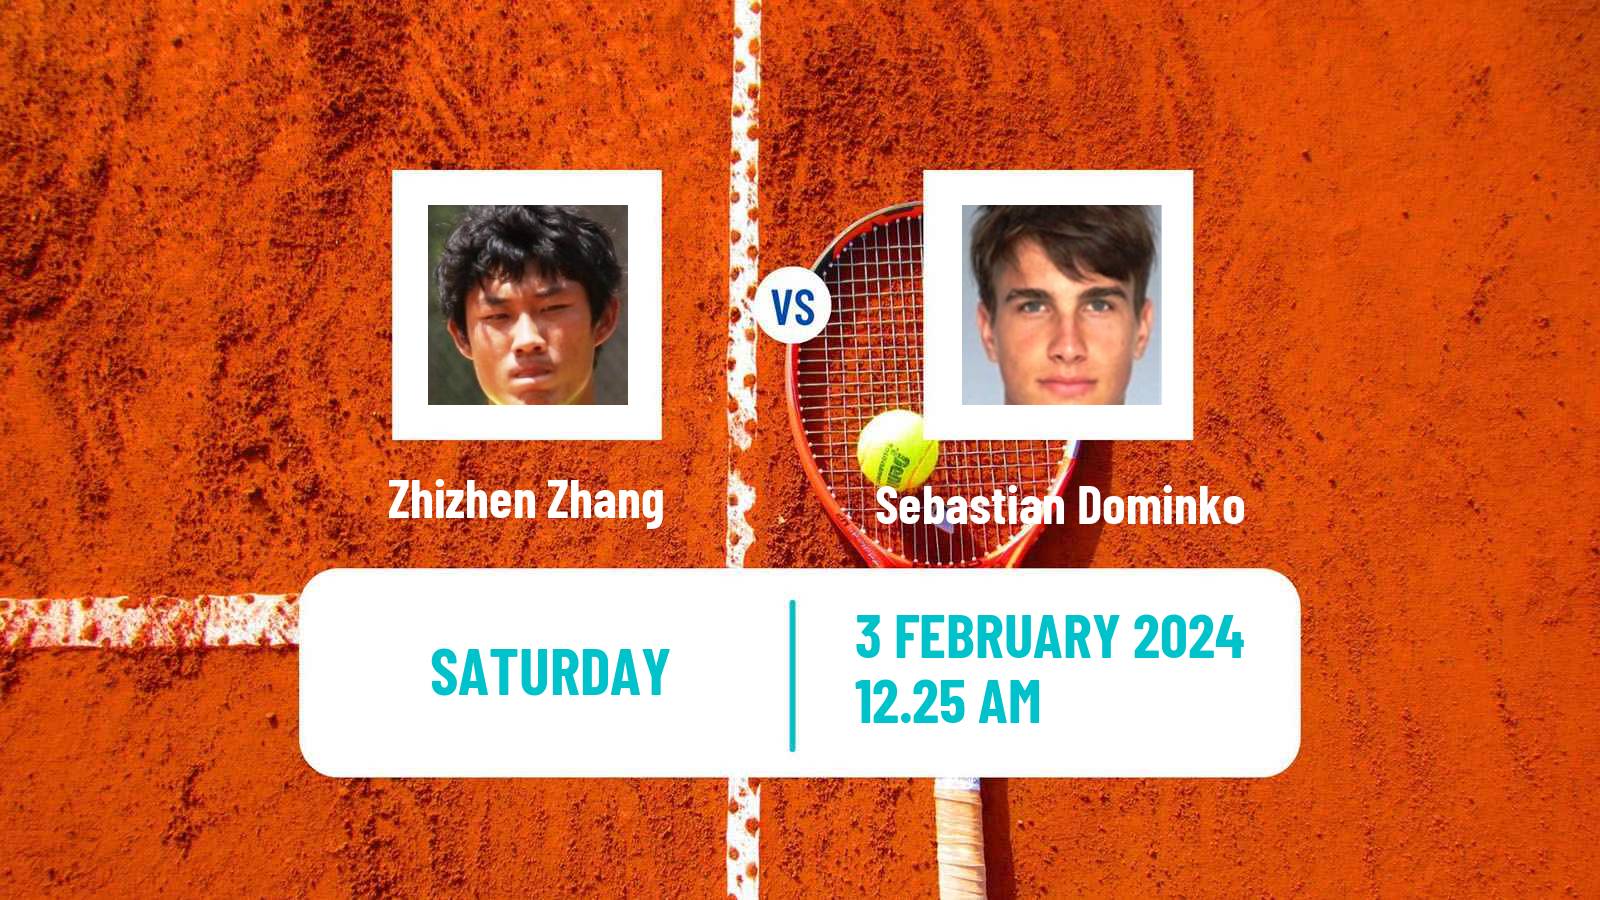 Tennis Davis Cup World Group II Zhizhen Zhang - Sebastian Dominko